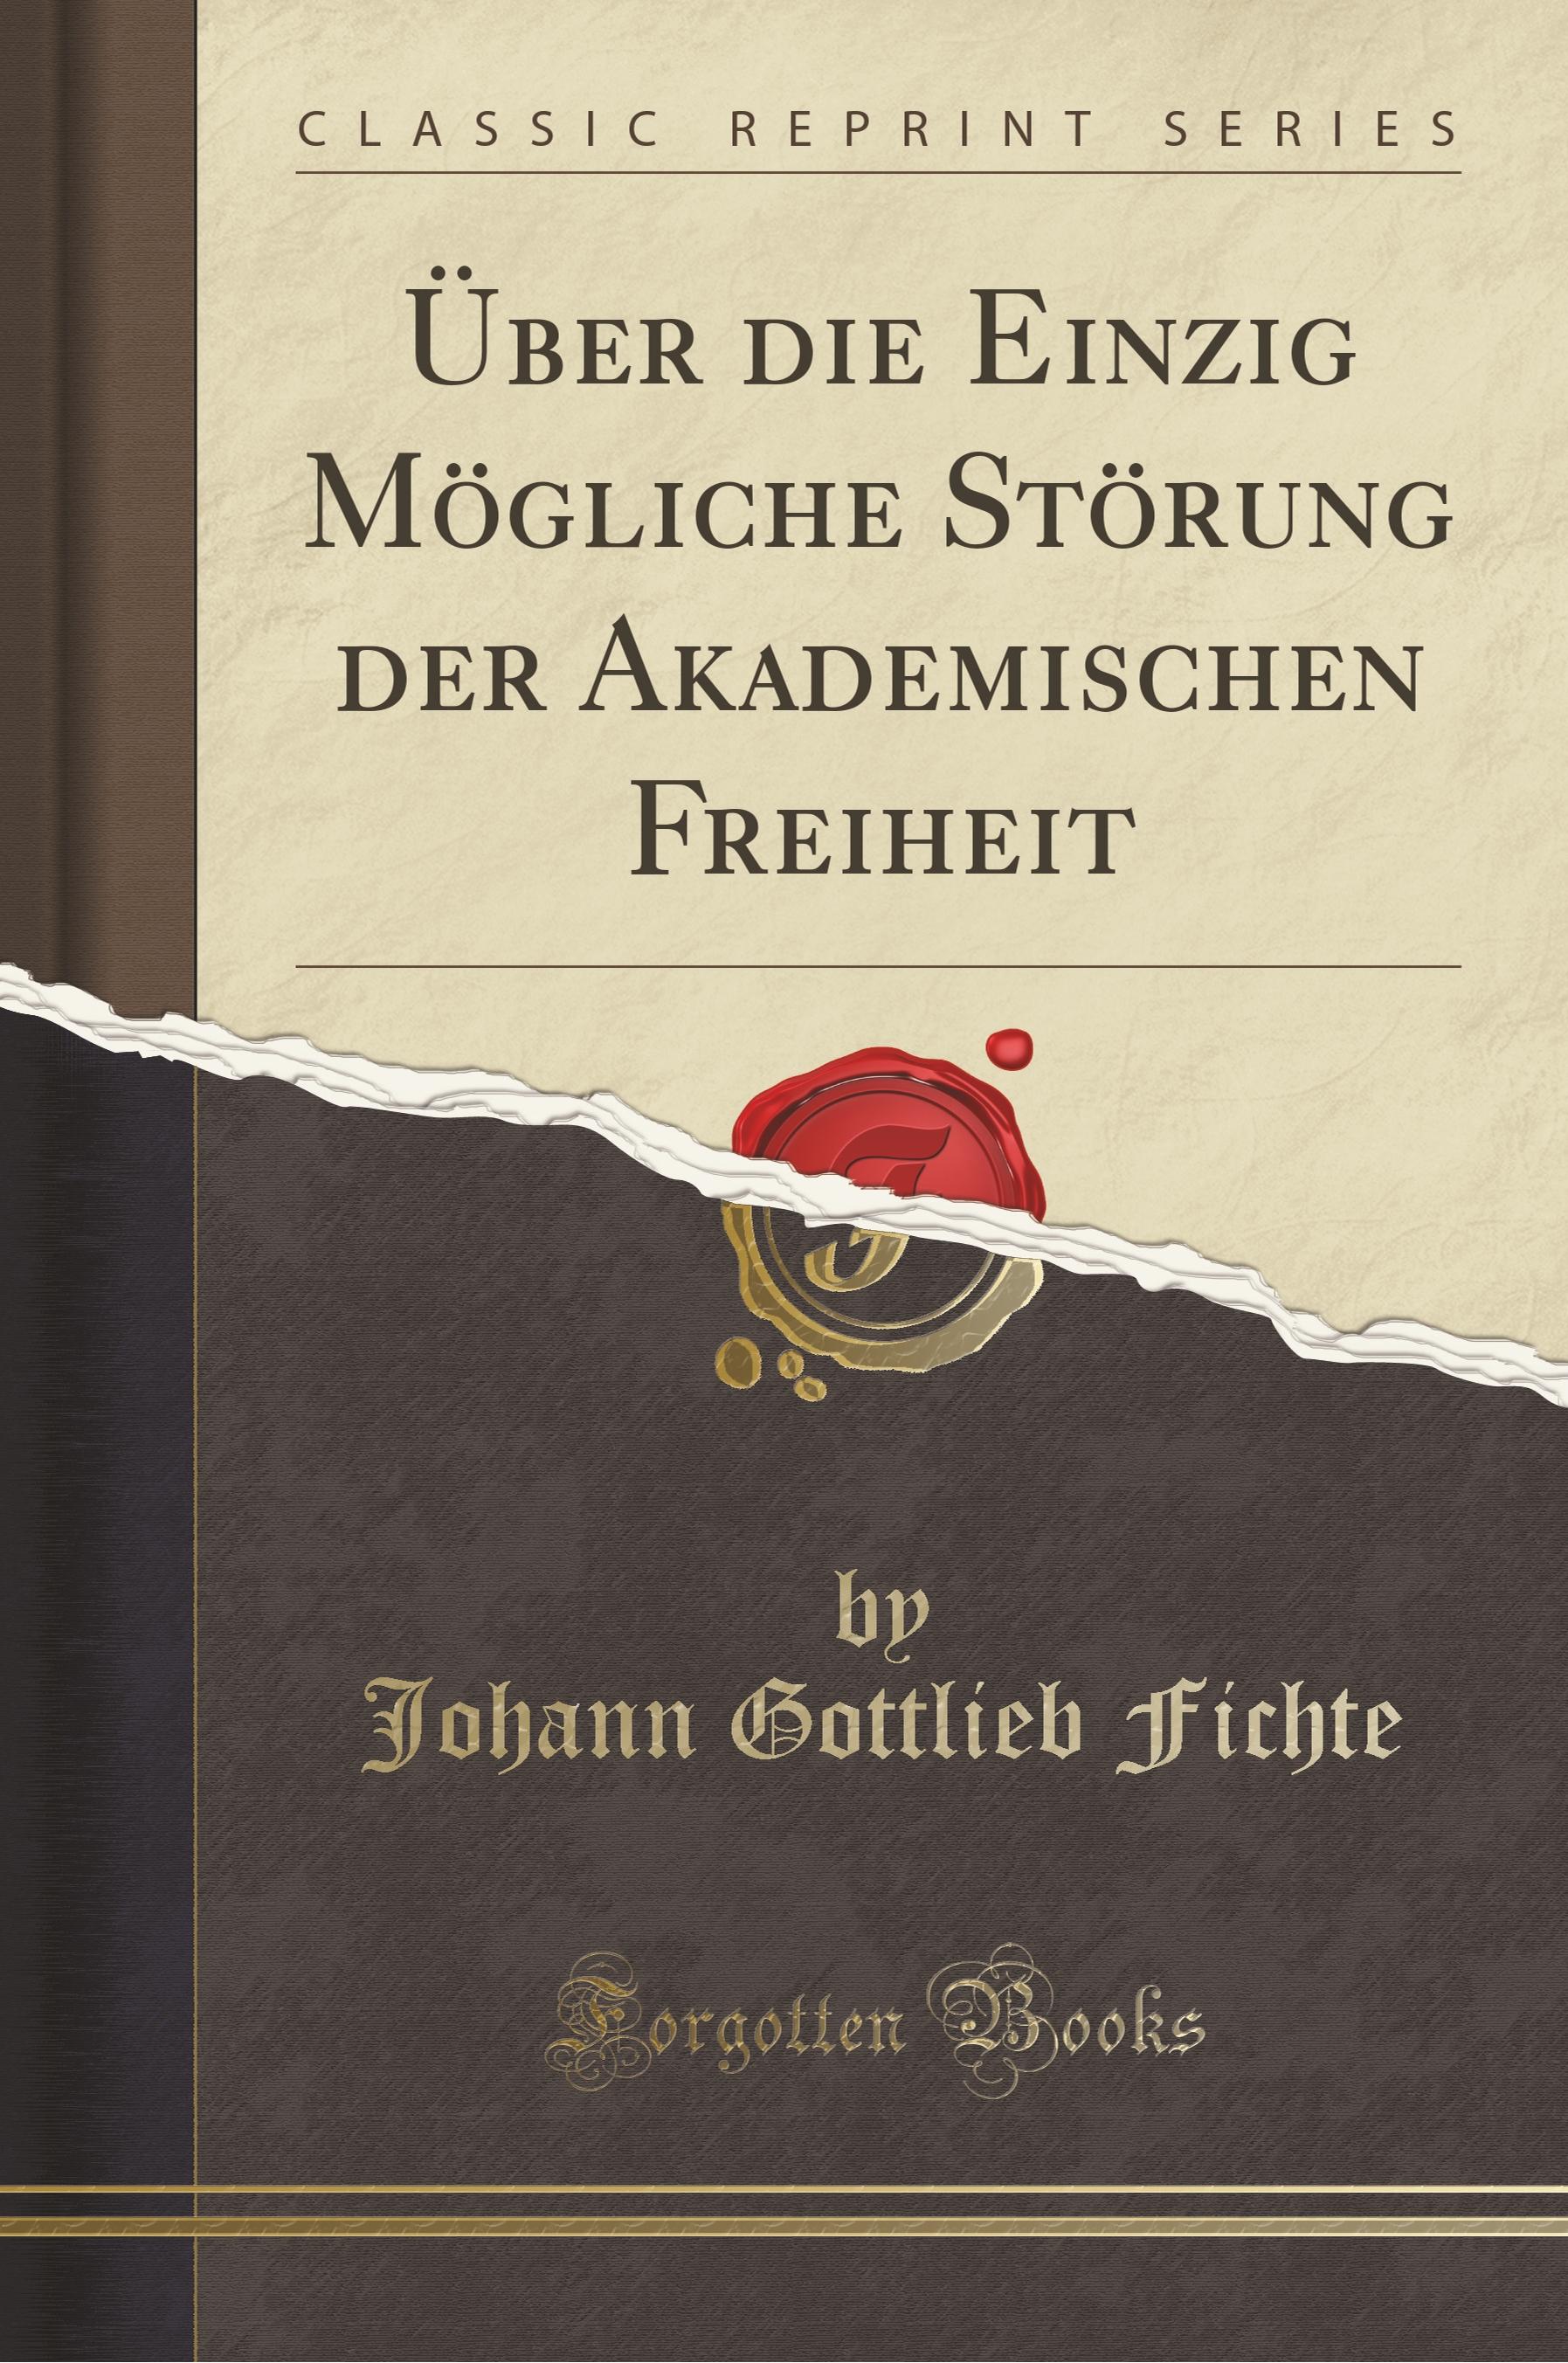 Fichte, J: Ueber die Einzig Moegliche Stoerung der Akademischen - Fichte, Johann Gottlieb